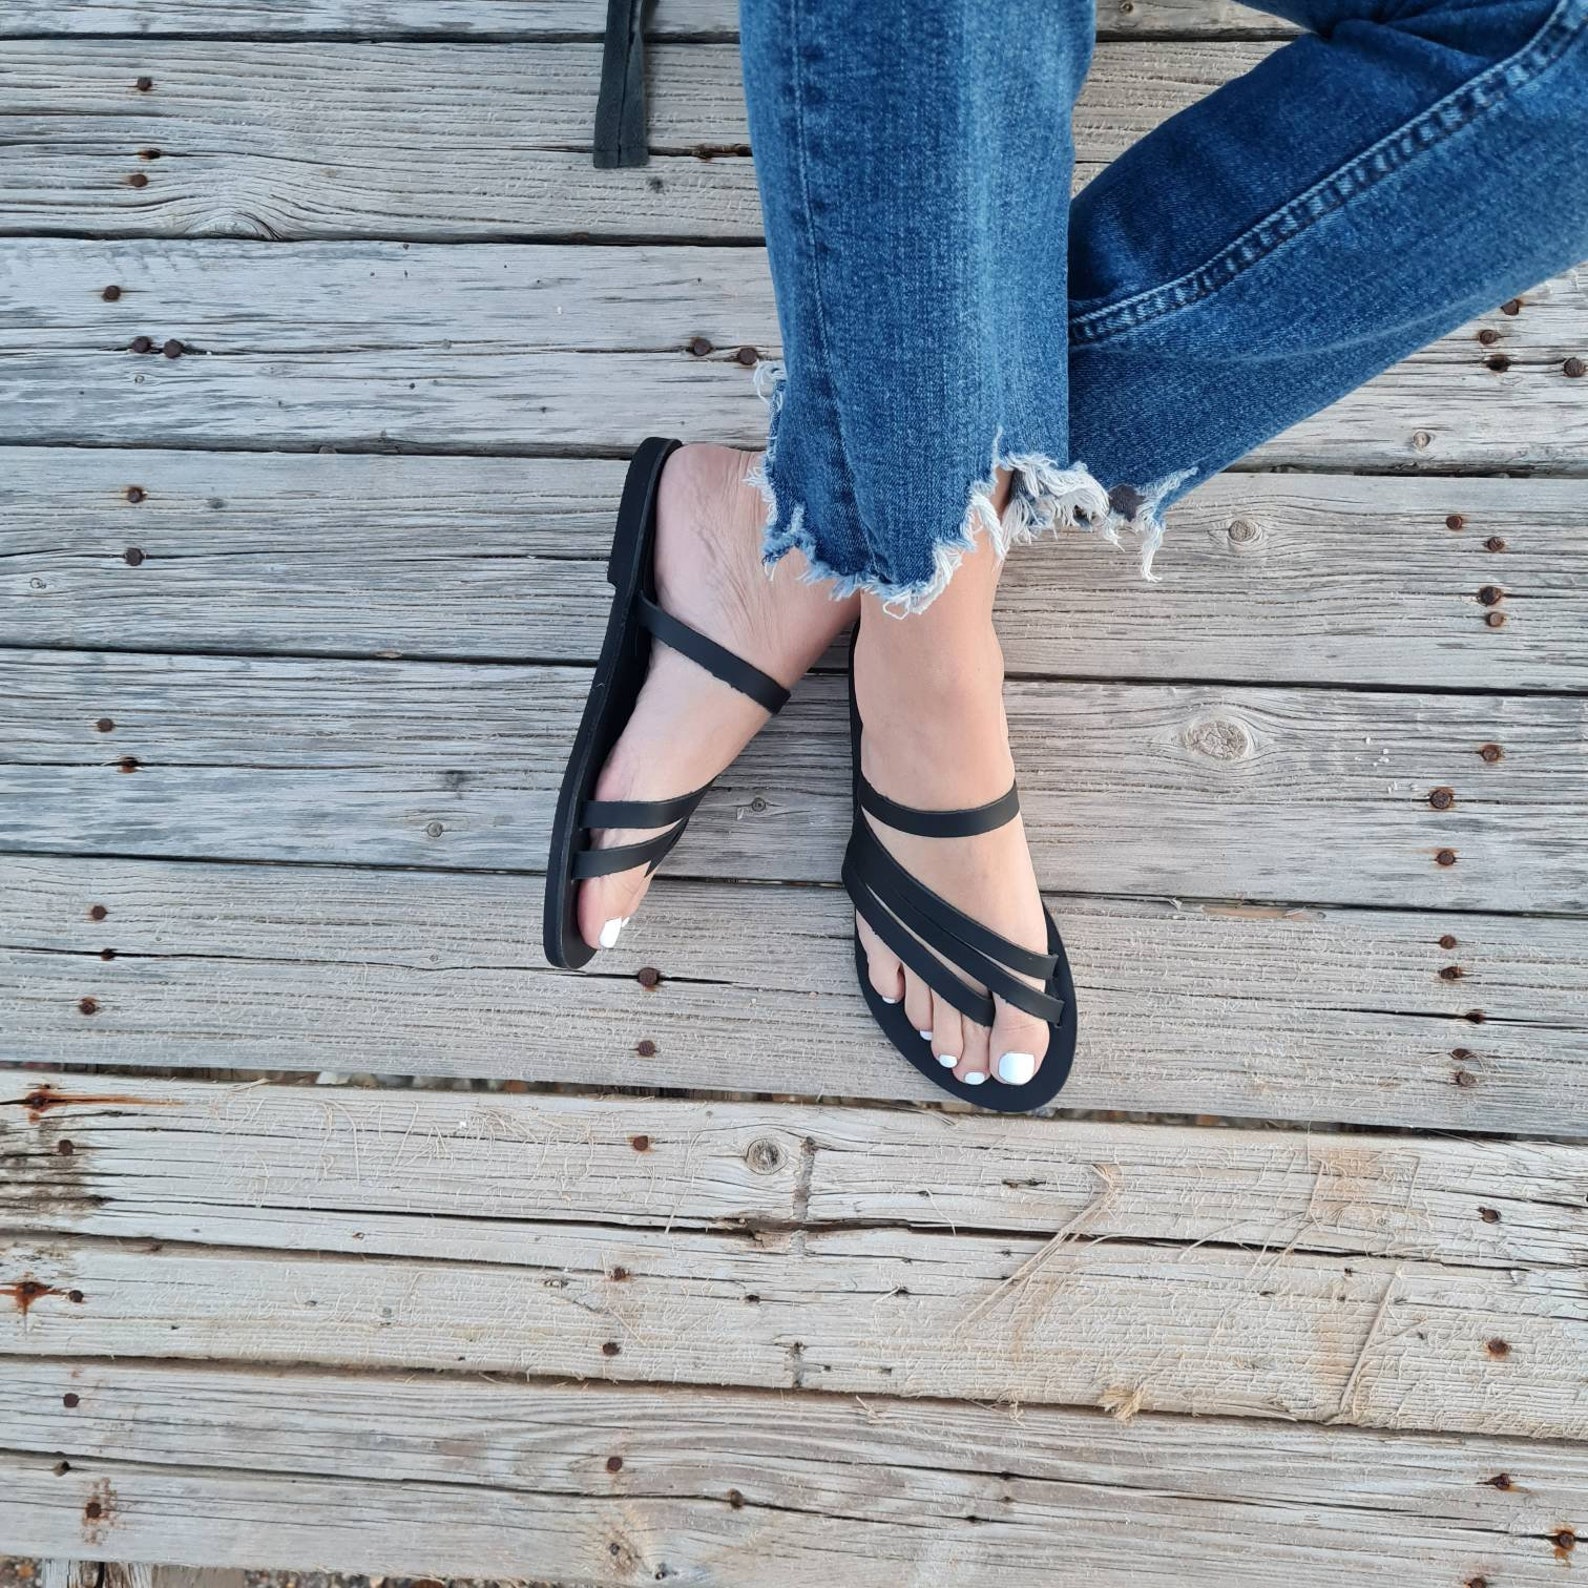 Greek Sandals Slip on Sandals Summer Flats Leather Sandals - Etsy